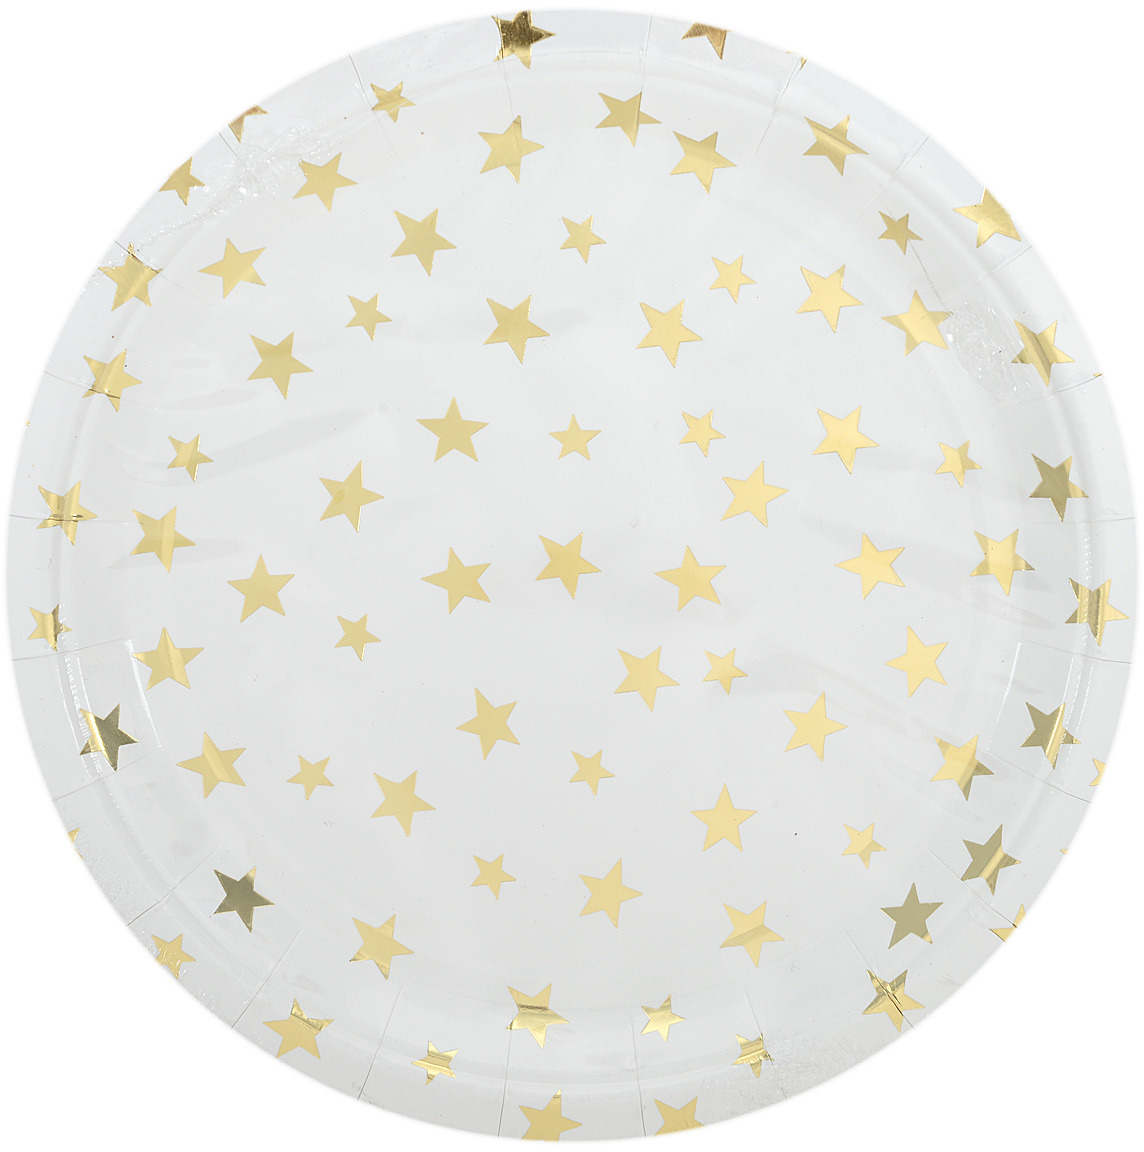 Тарелка Белая с золотыми звездами из ламинированного картона, диаметр 23 см, 6 шт в наборе / 1,8x23x23см арт.79290